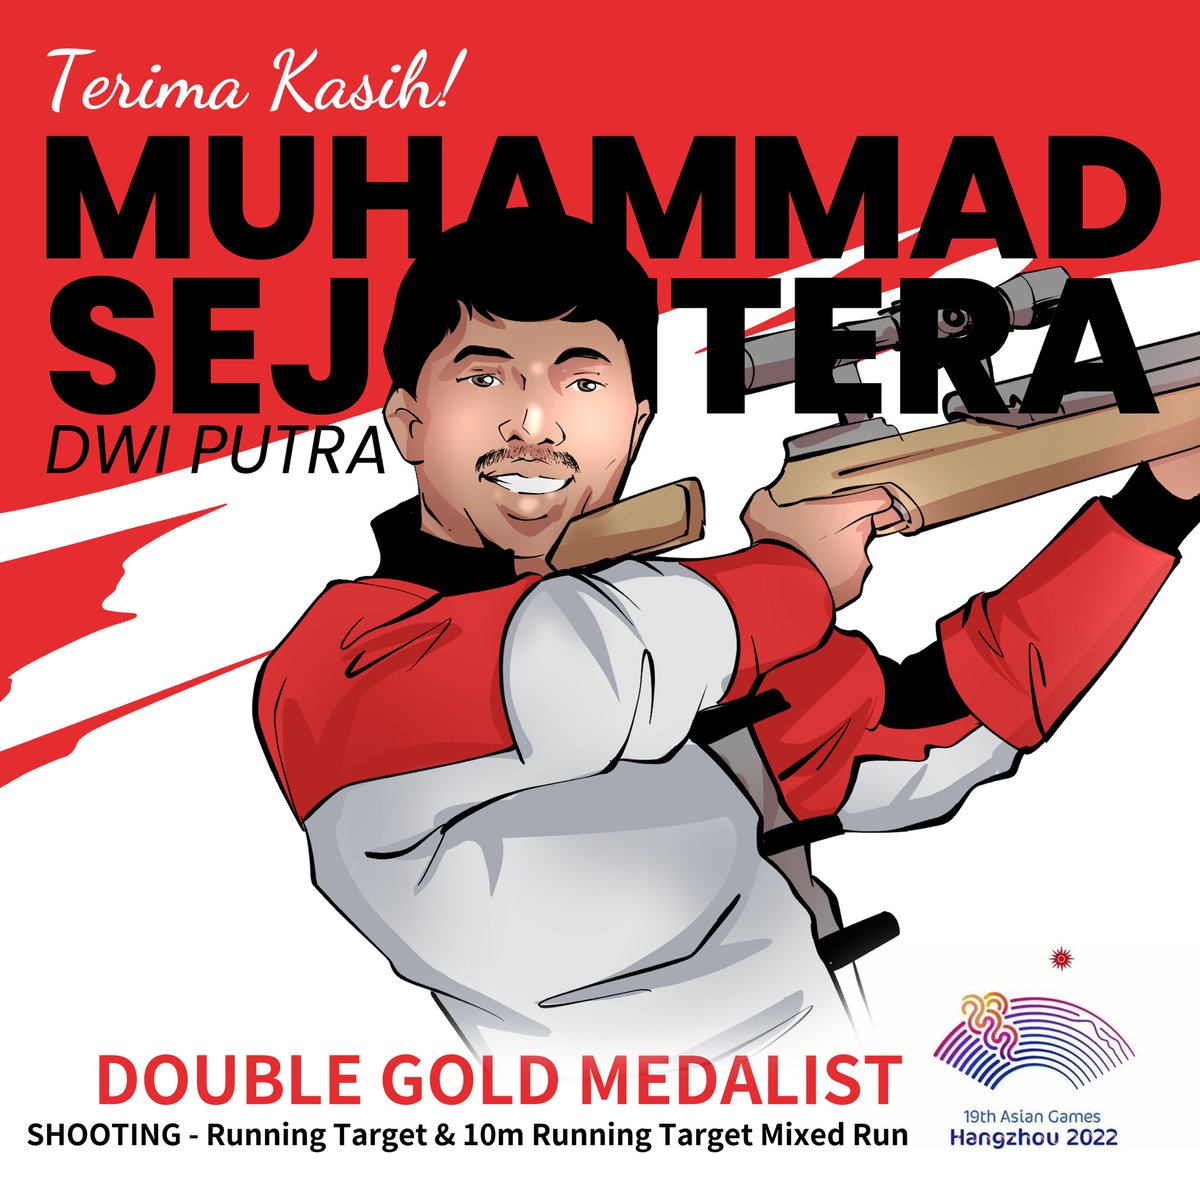 Terima Kasih Muhammad Sejahtera Dwi Putra! 

Dua medali emas cabor menembak untuk Indonesia

#AsianGames
#IndonesiaJuara 
#BreakingNews